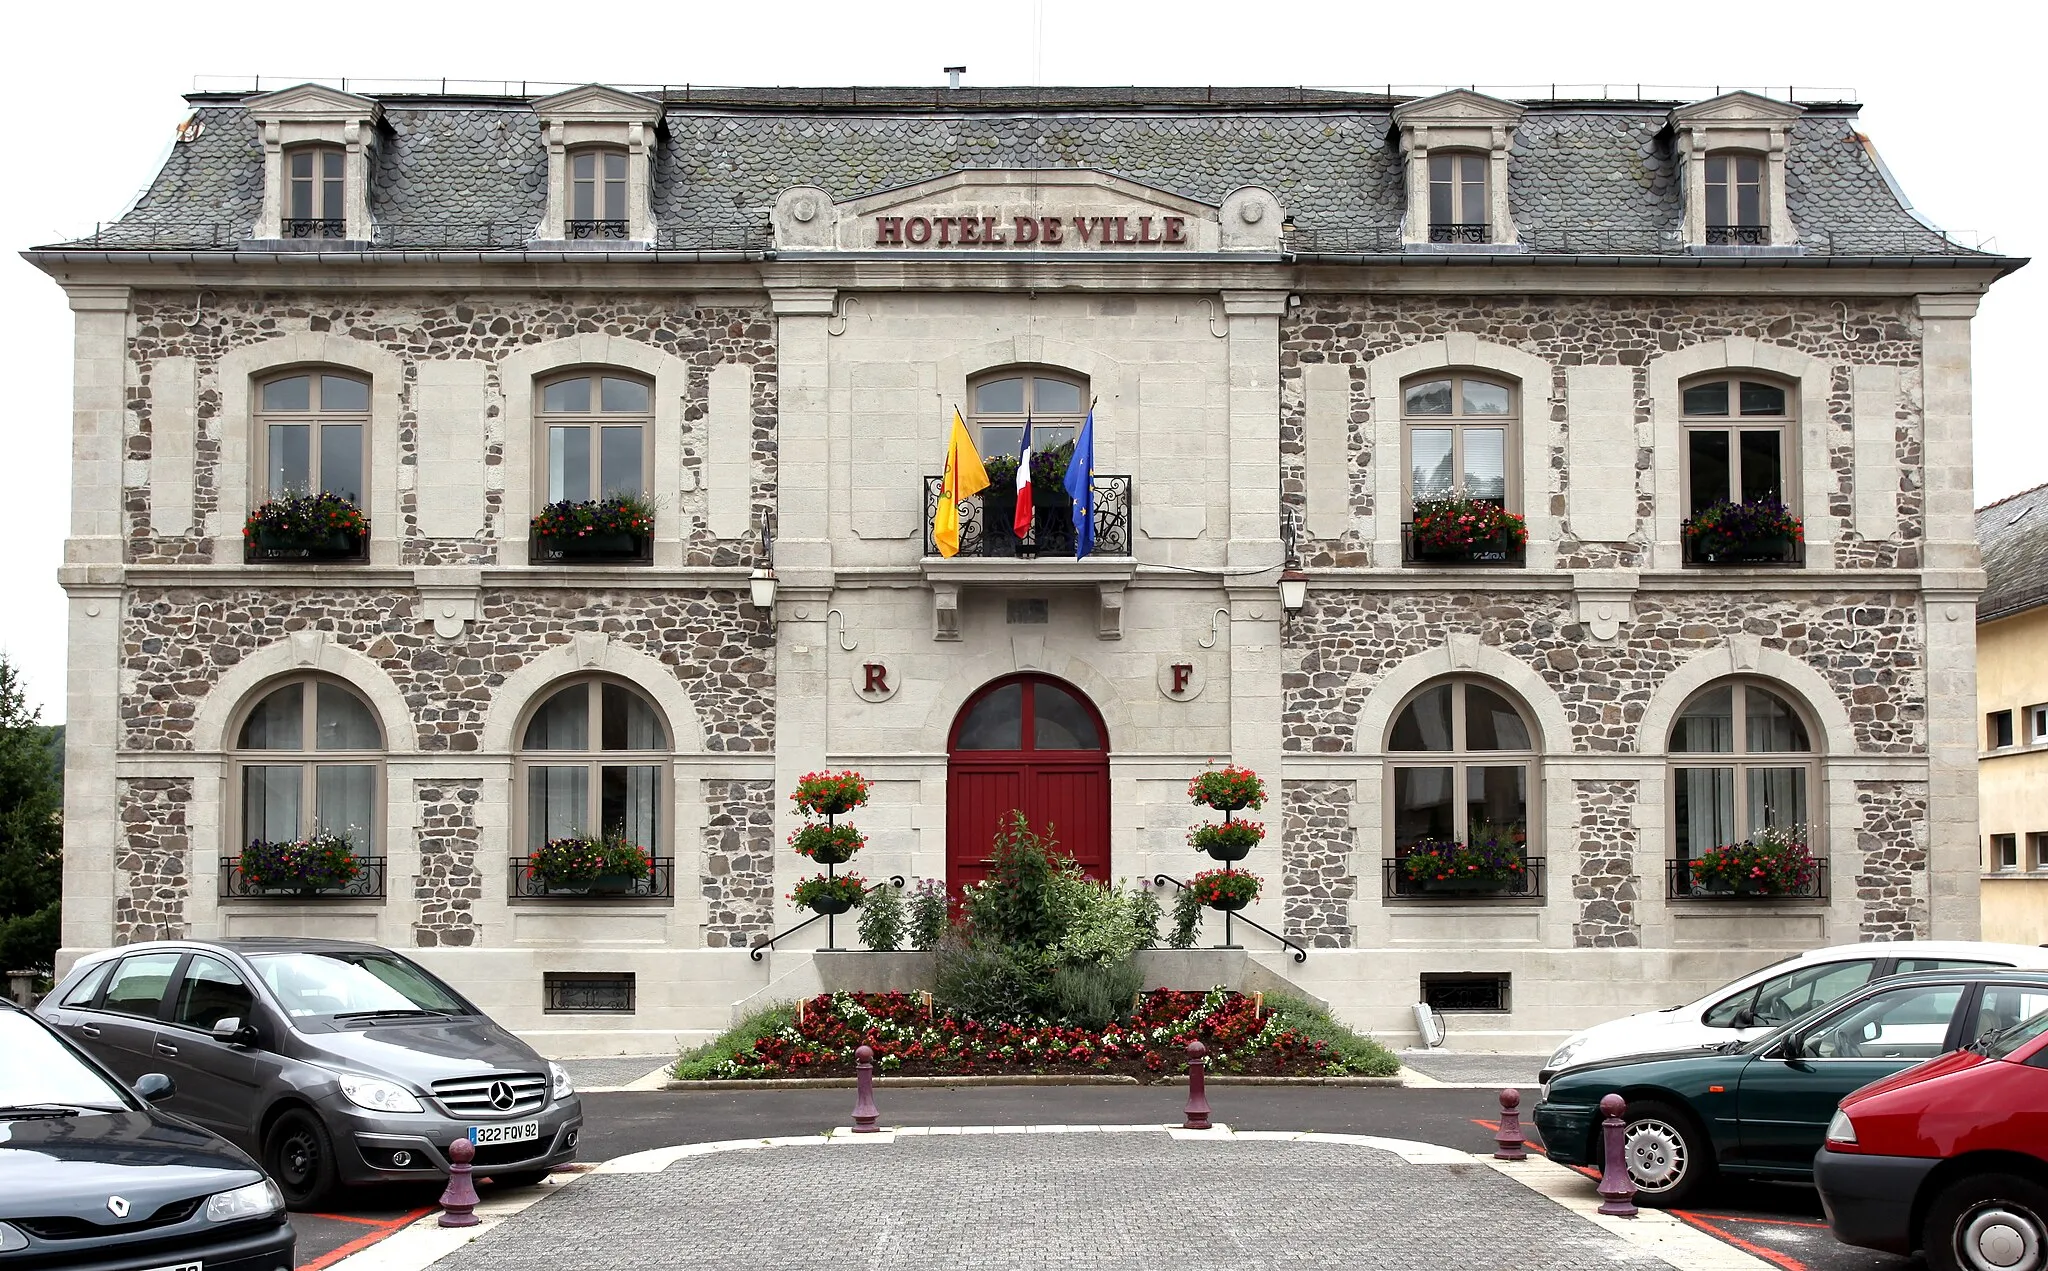 Photo showing: Hotel de ville de Riom-ès-Montagnes, Cantal, France.